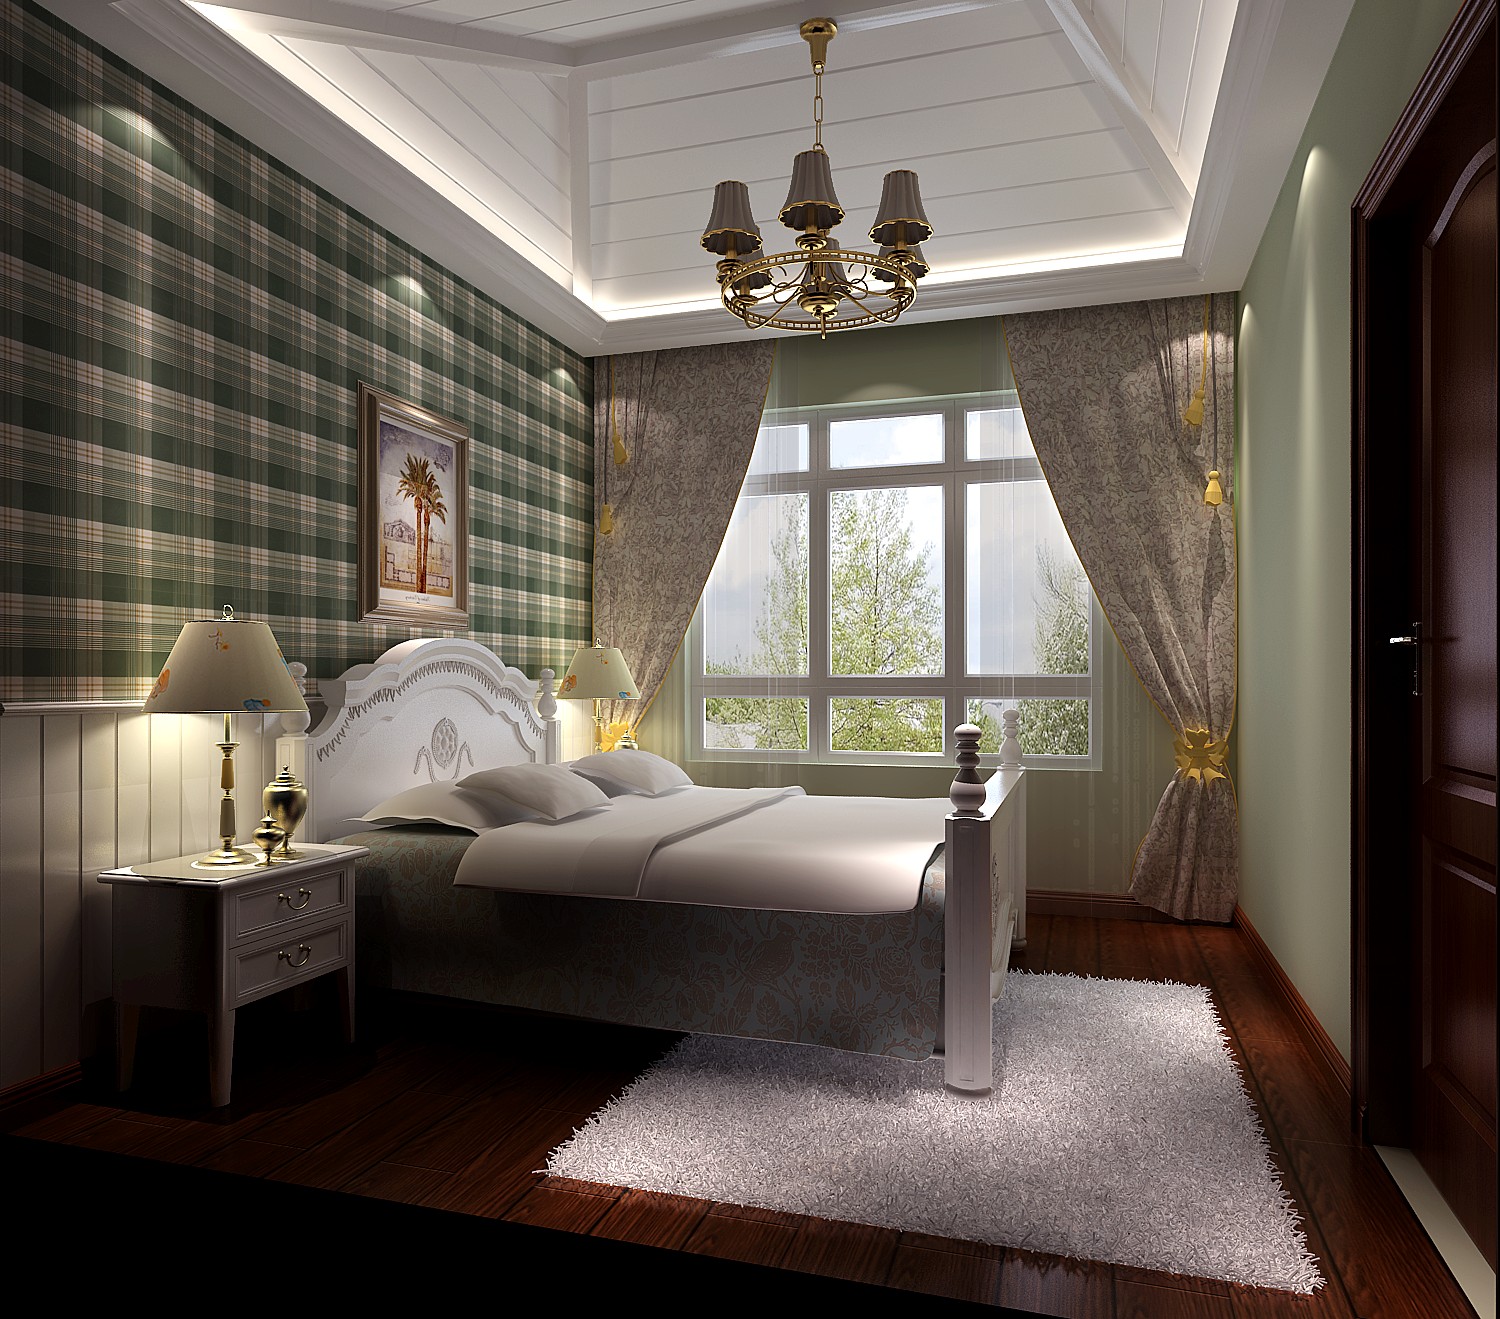 五居 托斯卡纳 公寓 卧室图片来自高度国际装饰宋增会在鲁能七号院174平米托斯卡纳的分享